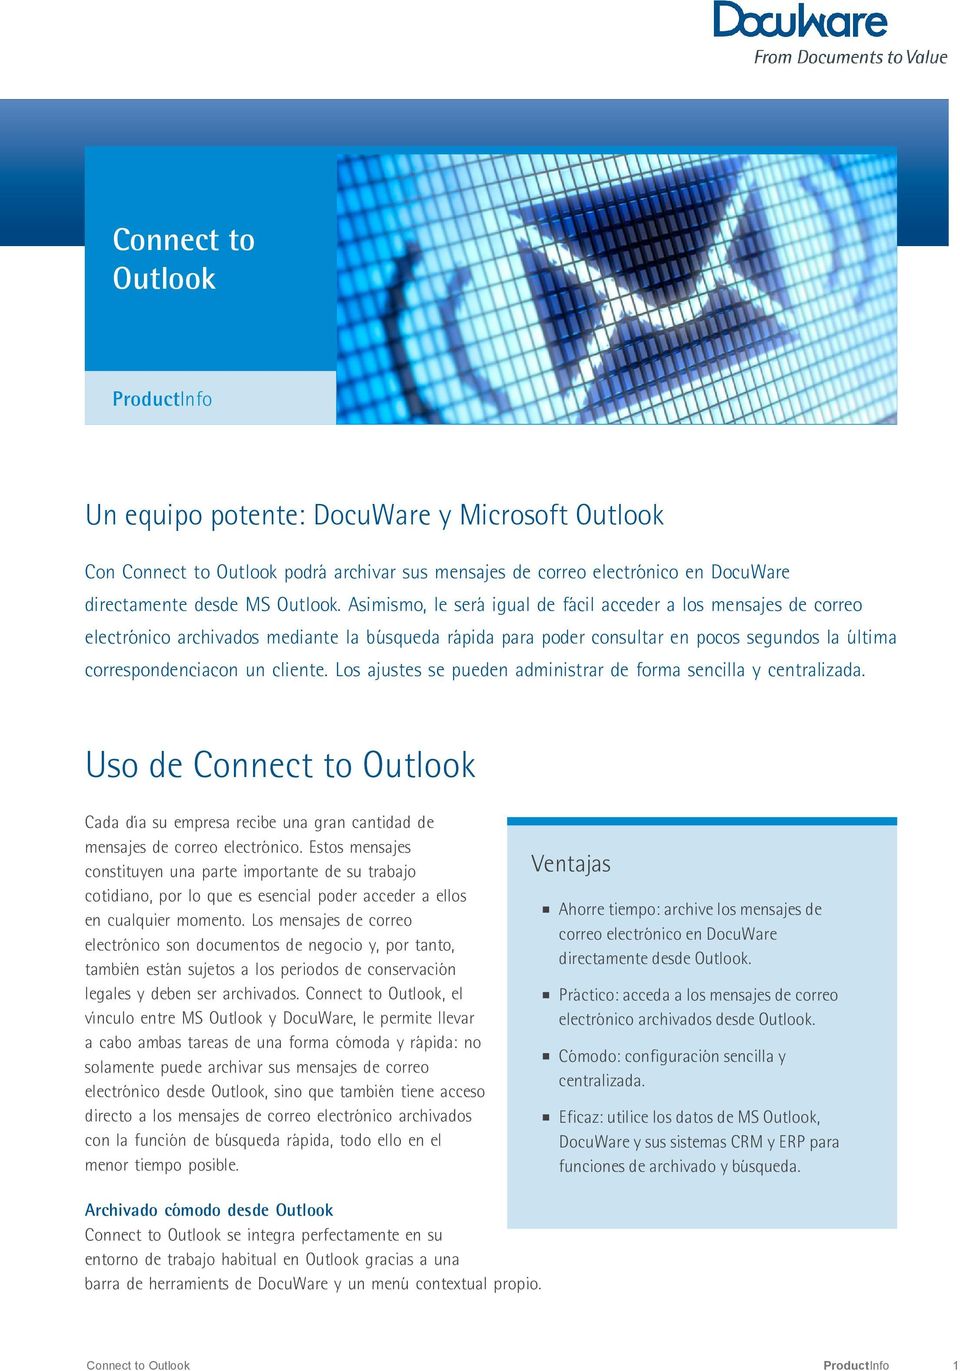 Los ajustes se pueden administrar de forma sencilla y centralizada. Uso de Connect to Outlook Cada día su empresa recibe una gran cantidad de mensajes de correo electrónico.